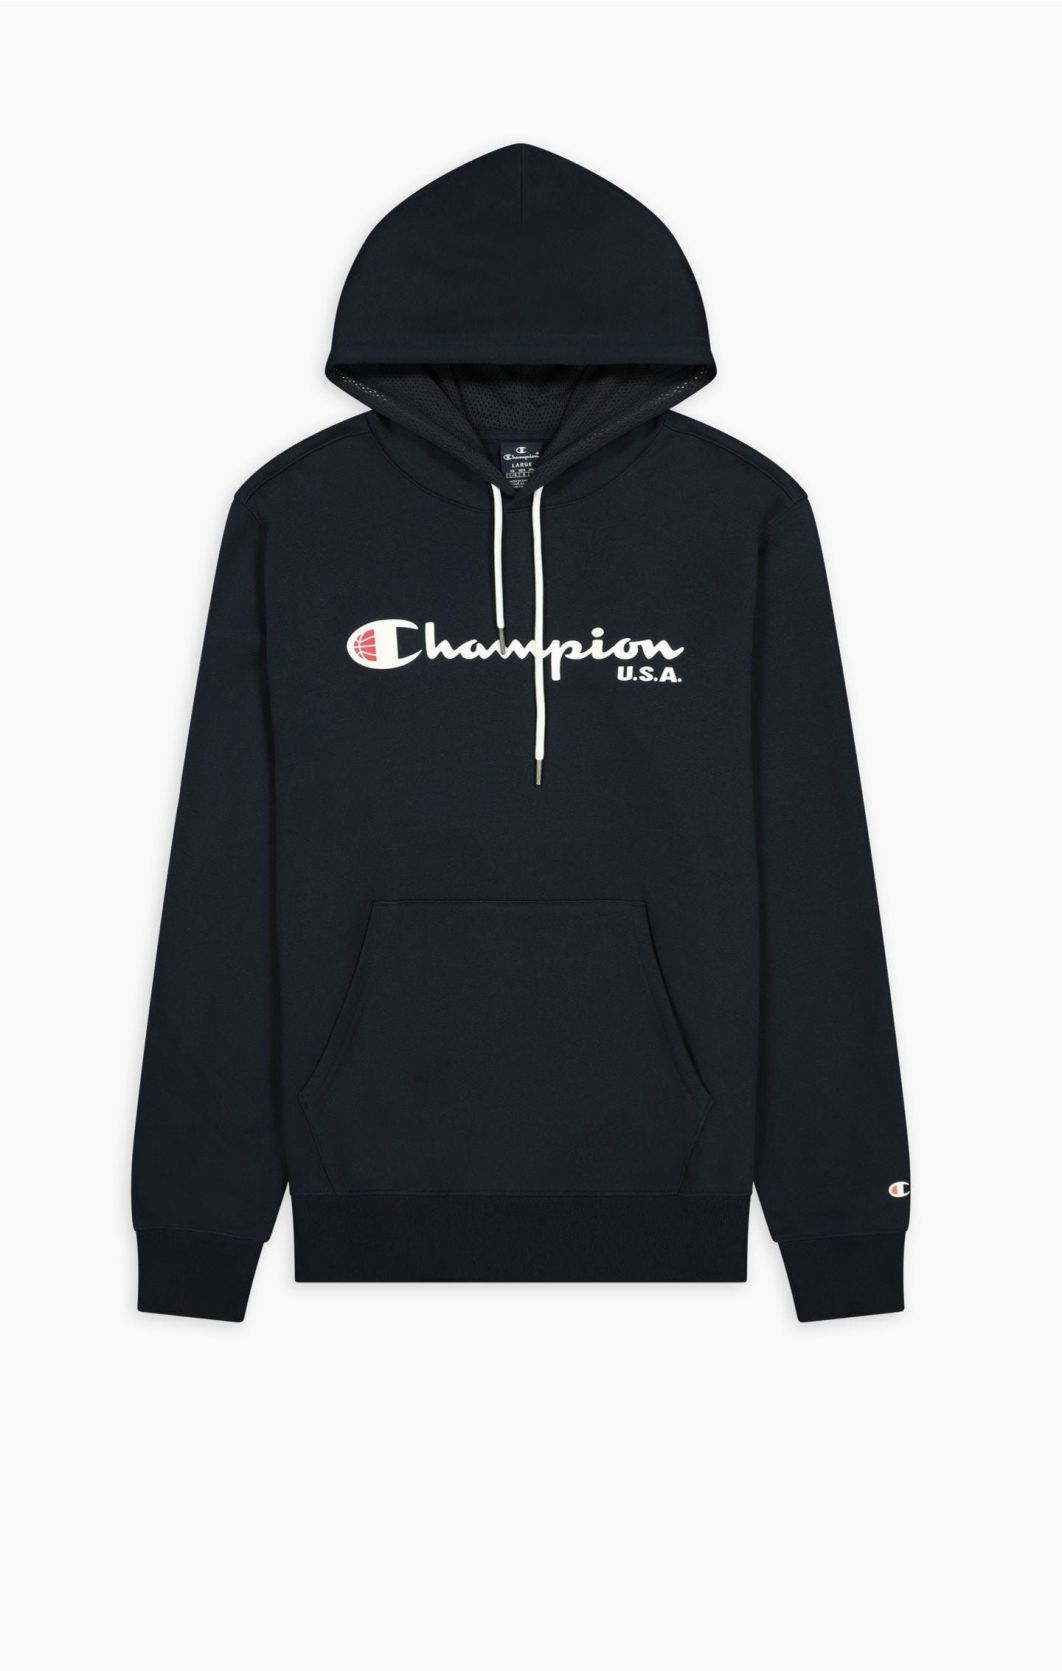 Visiter la boutique ChampionChampion Small Logo Tape Sweat-shirt pour femme 